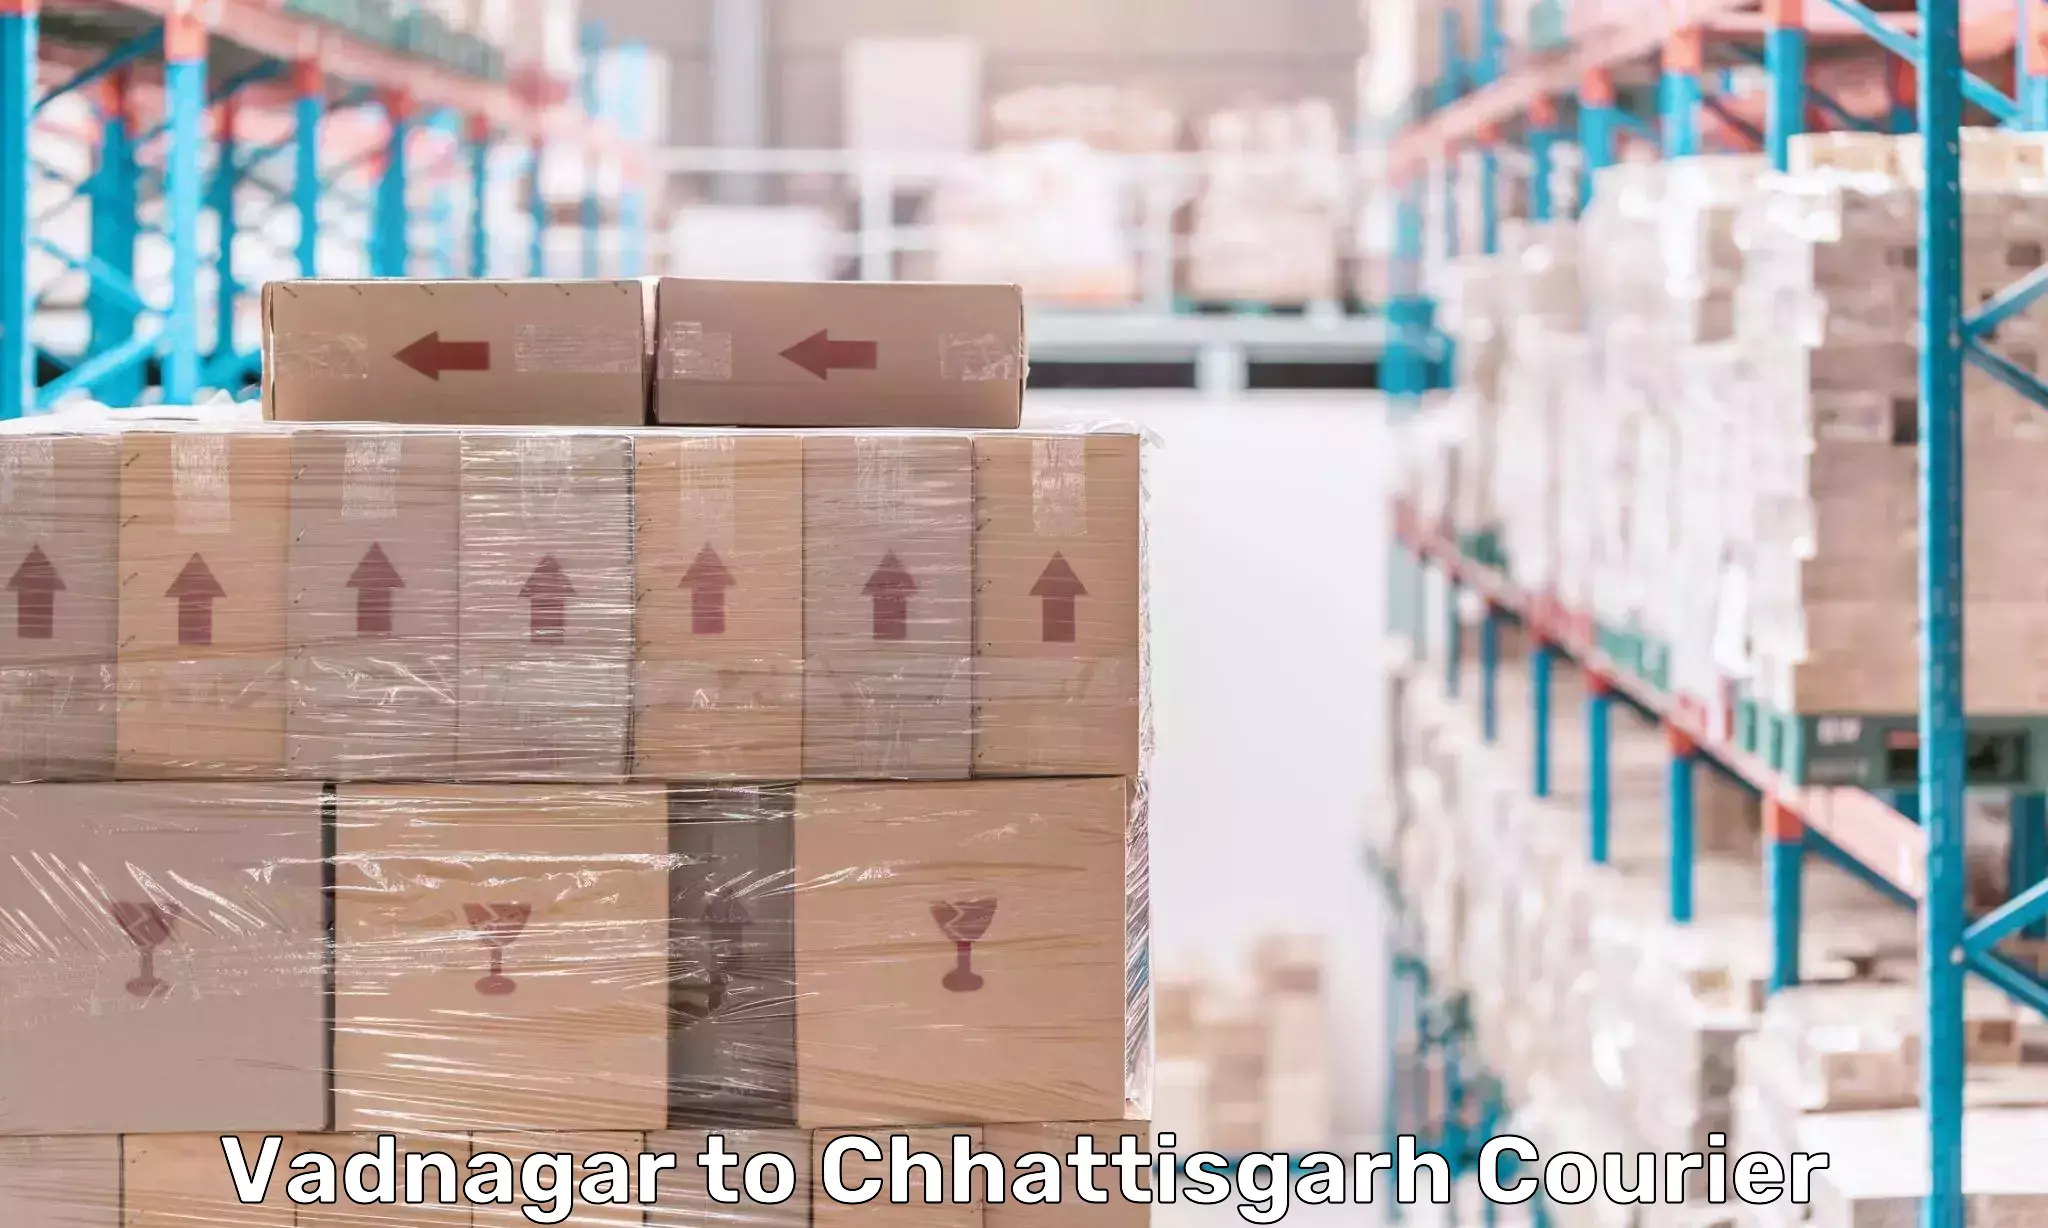 Customized shipping options Vadnagar to Chhattisgarh